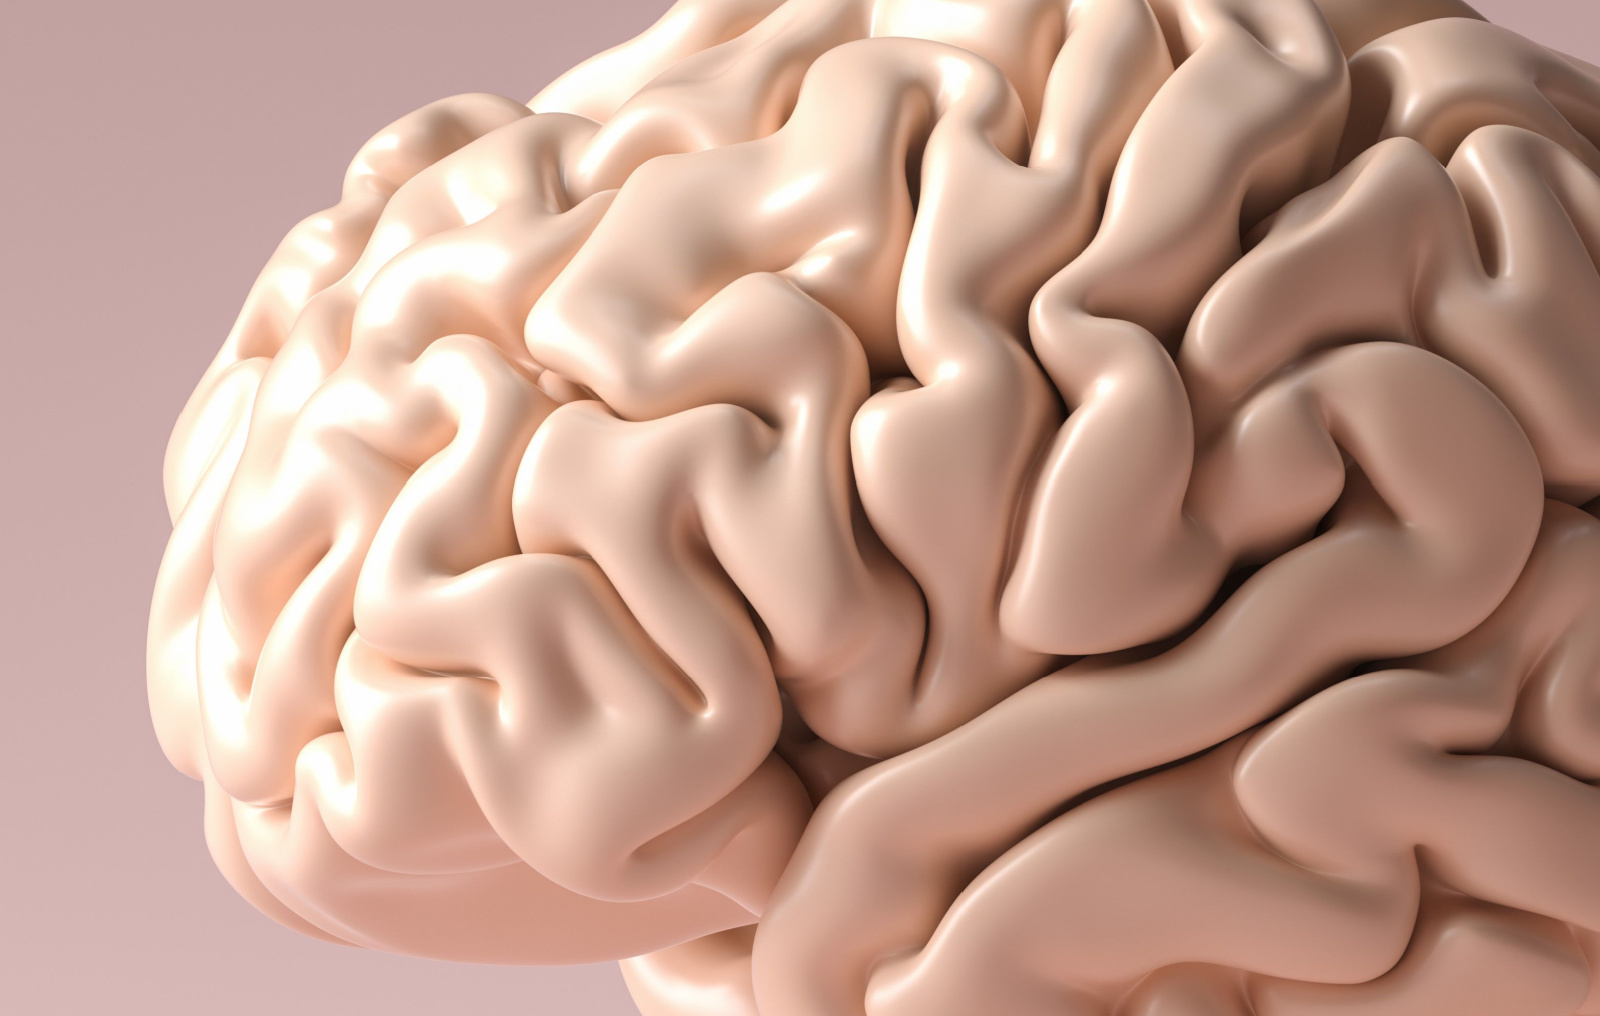 Kada mogu da se uoče tihe promene na mozgu koje prethode Alchajmerovoj bolesti? - eKlinika